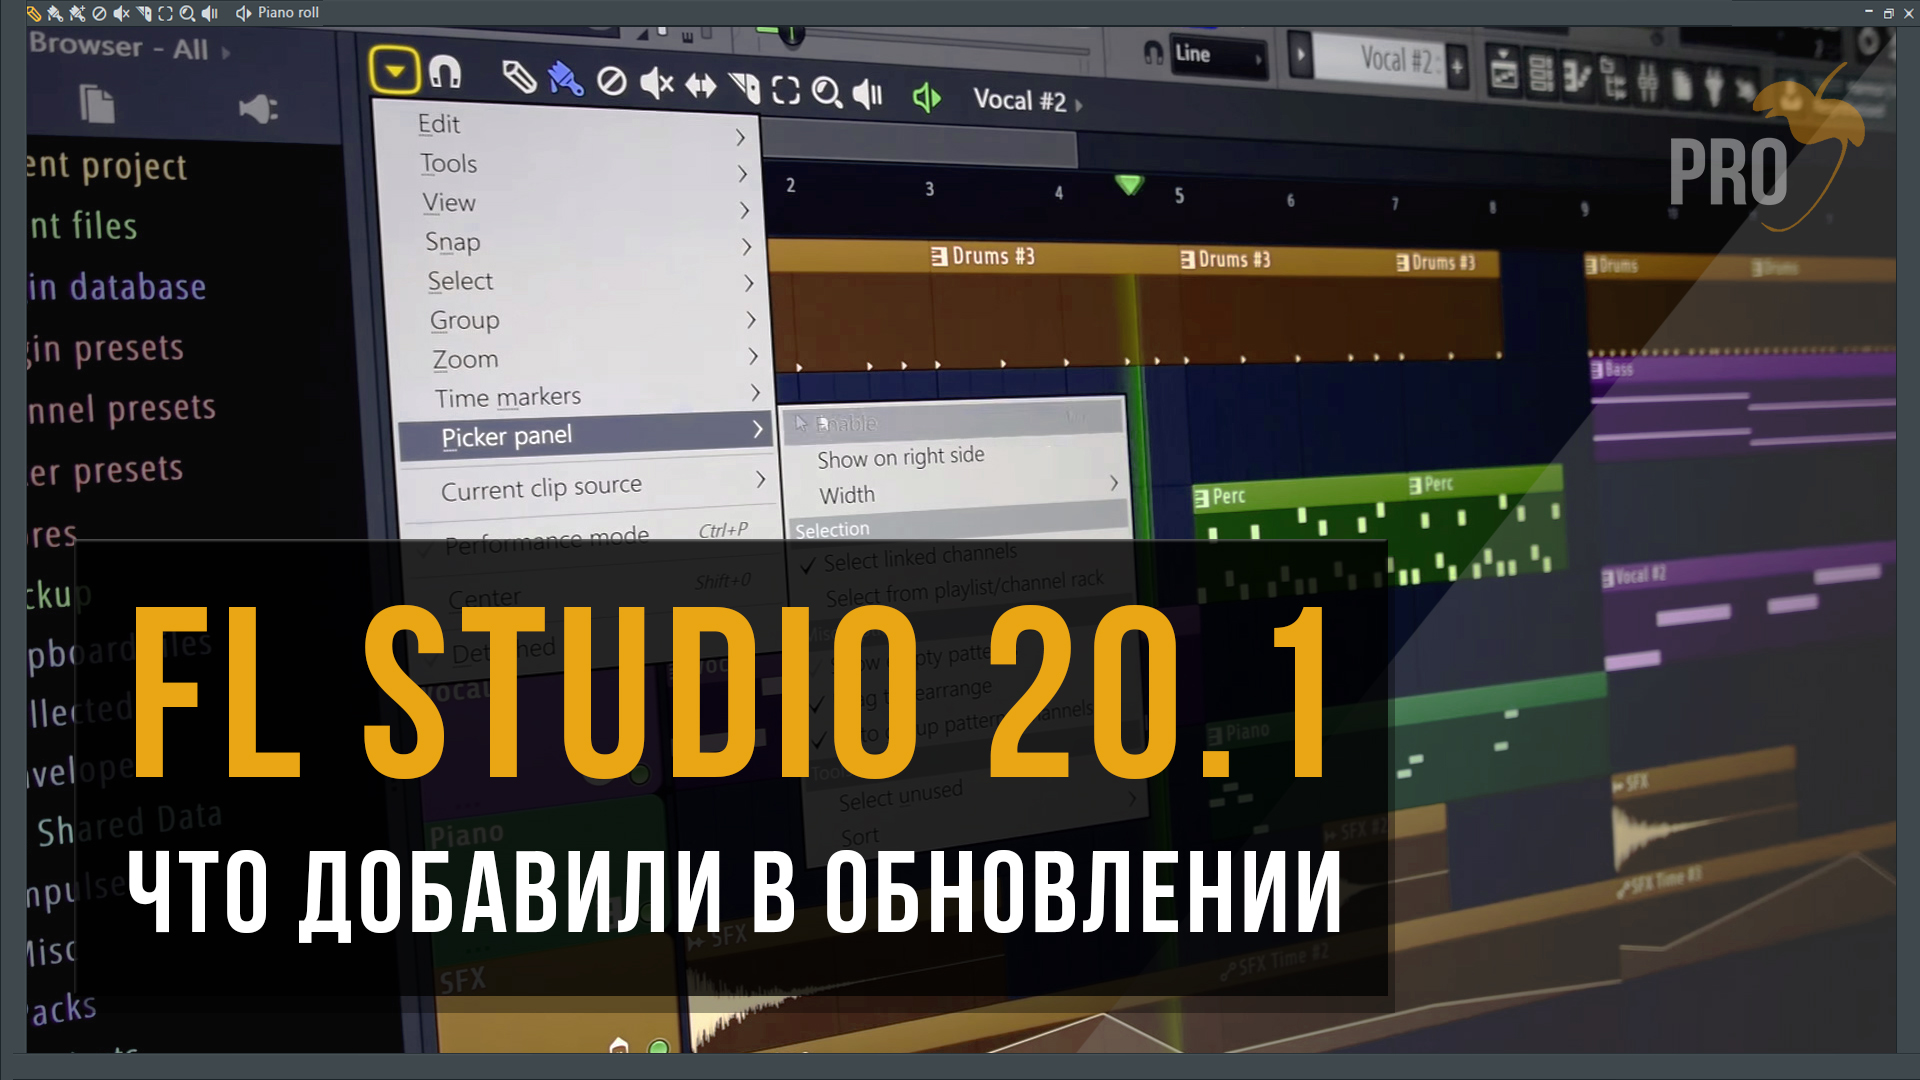 что добавили в новое обновлении fl studio 20.1